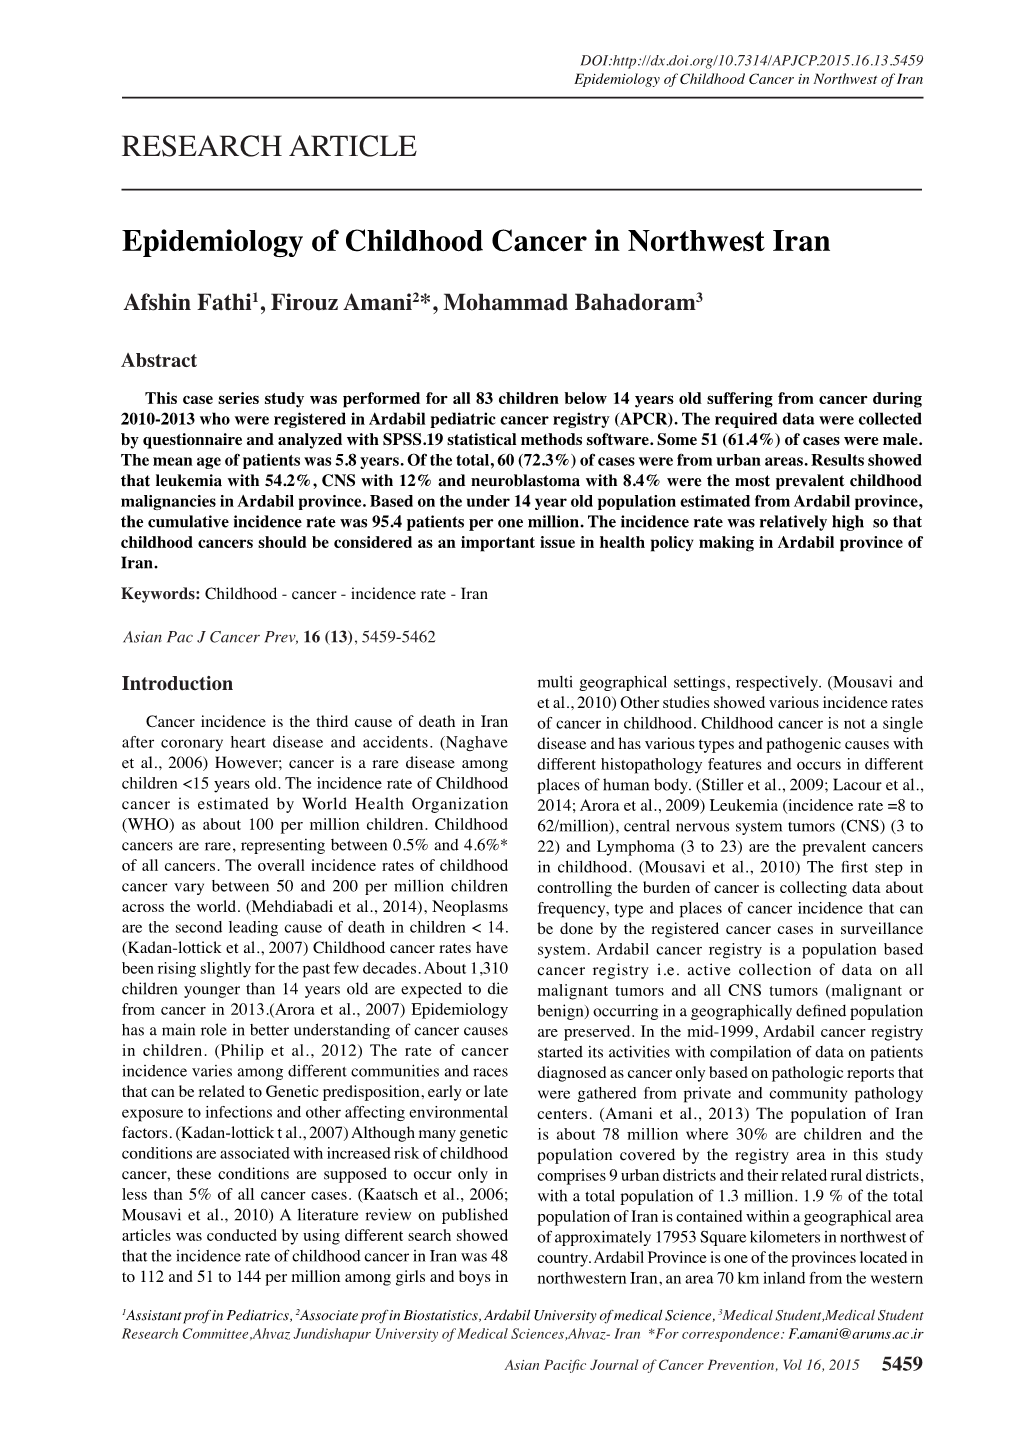 Epidemiology of Childhood Cancer in Northwest Iran